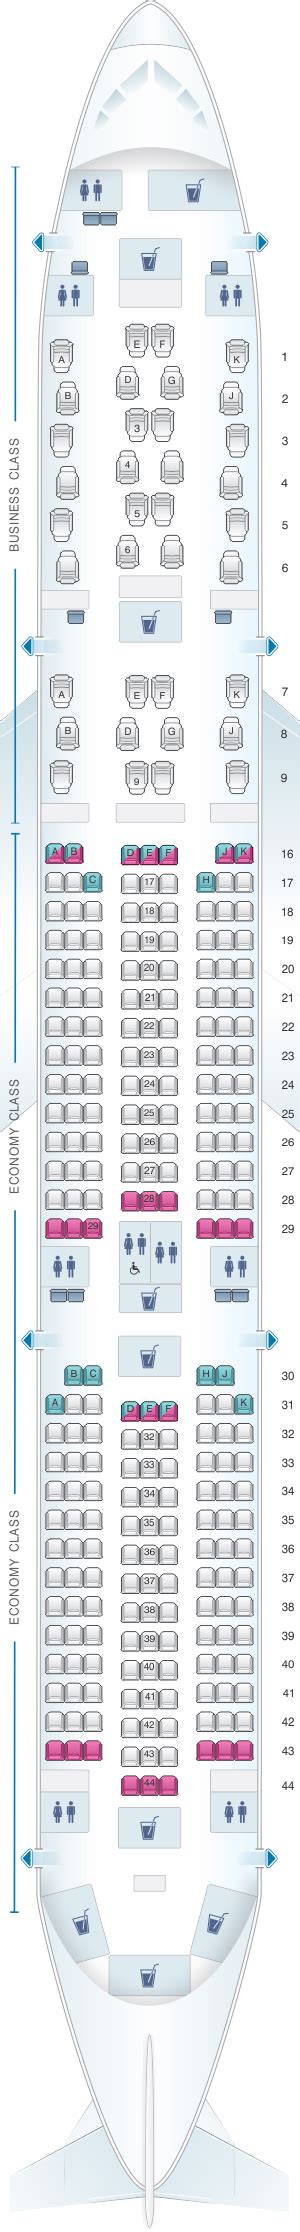 Qatar Airways A350 900 Seat Map Elcho Table